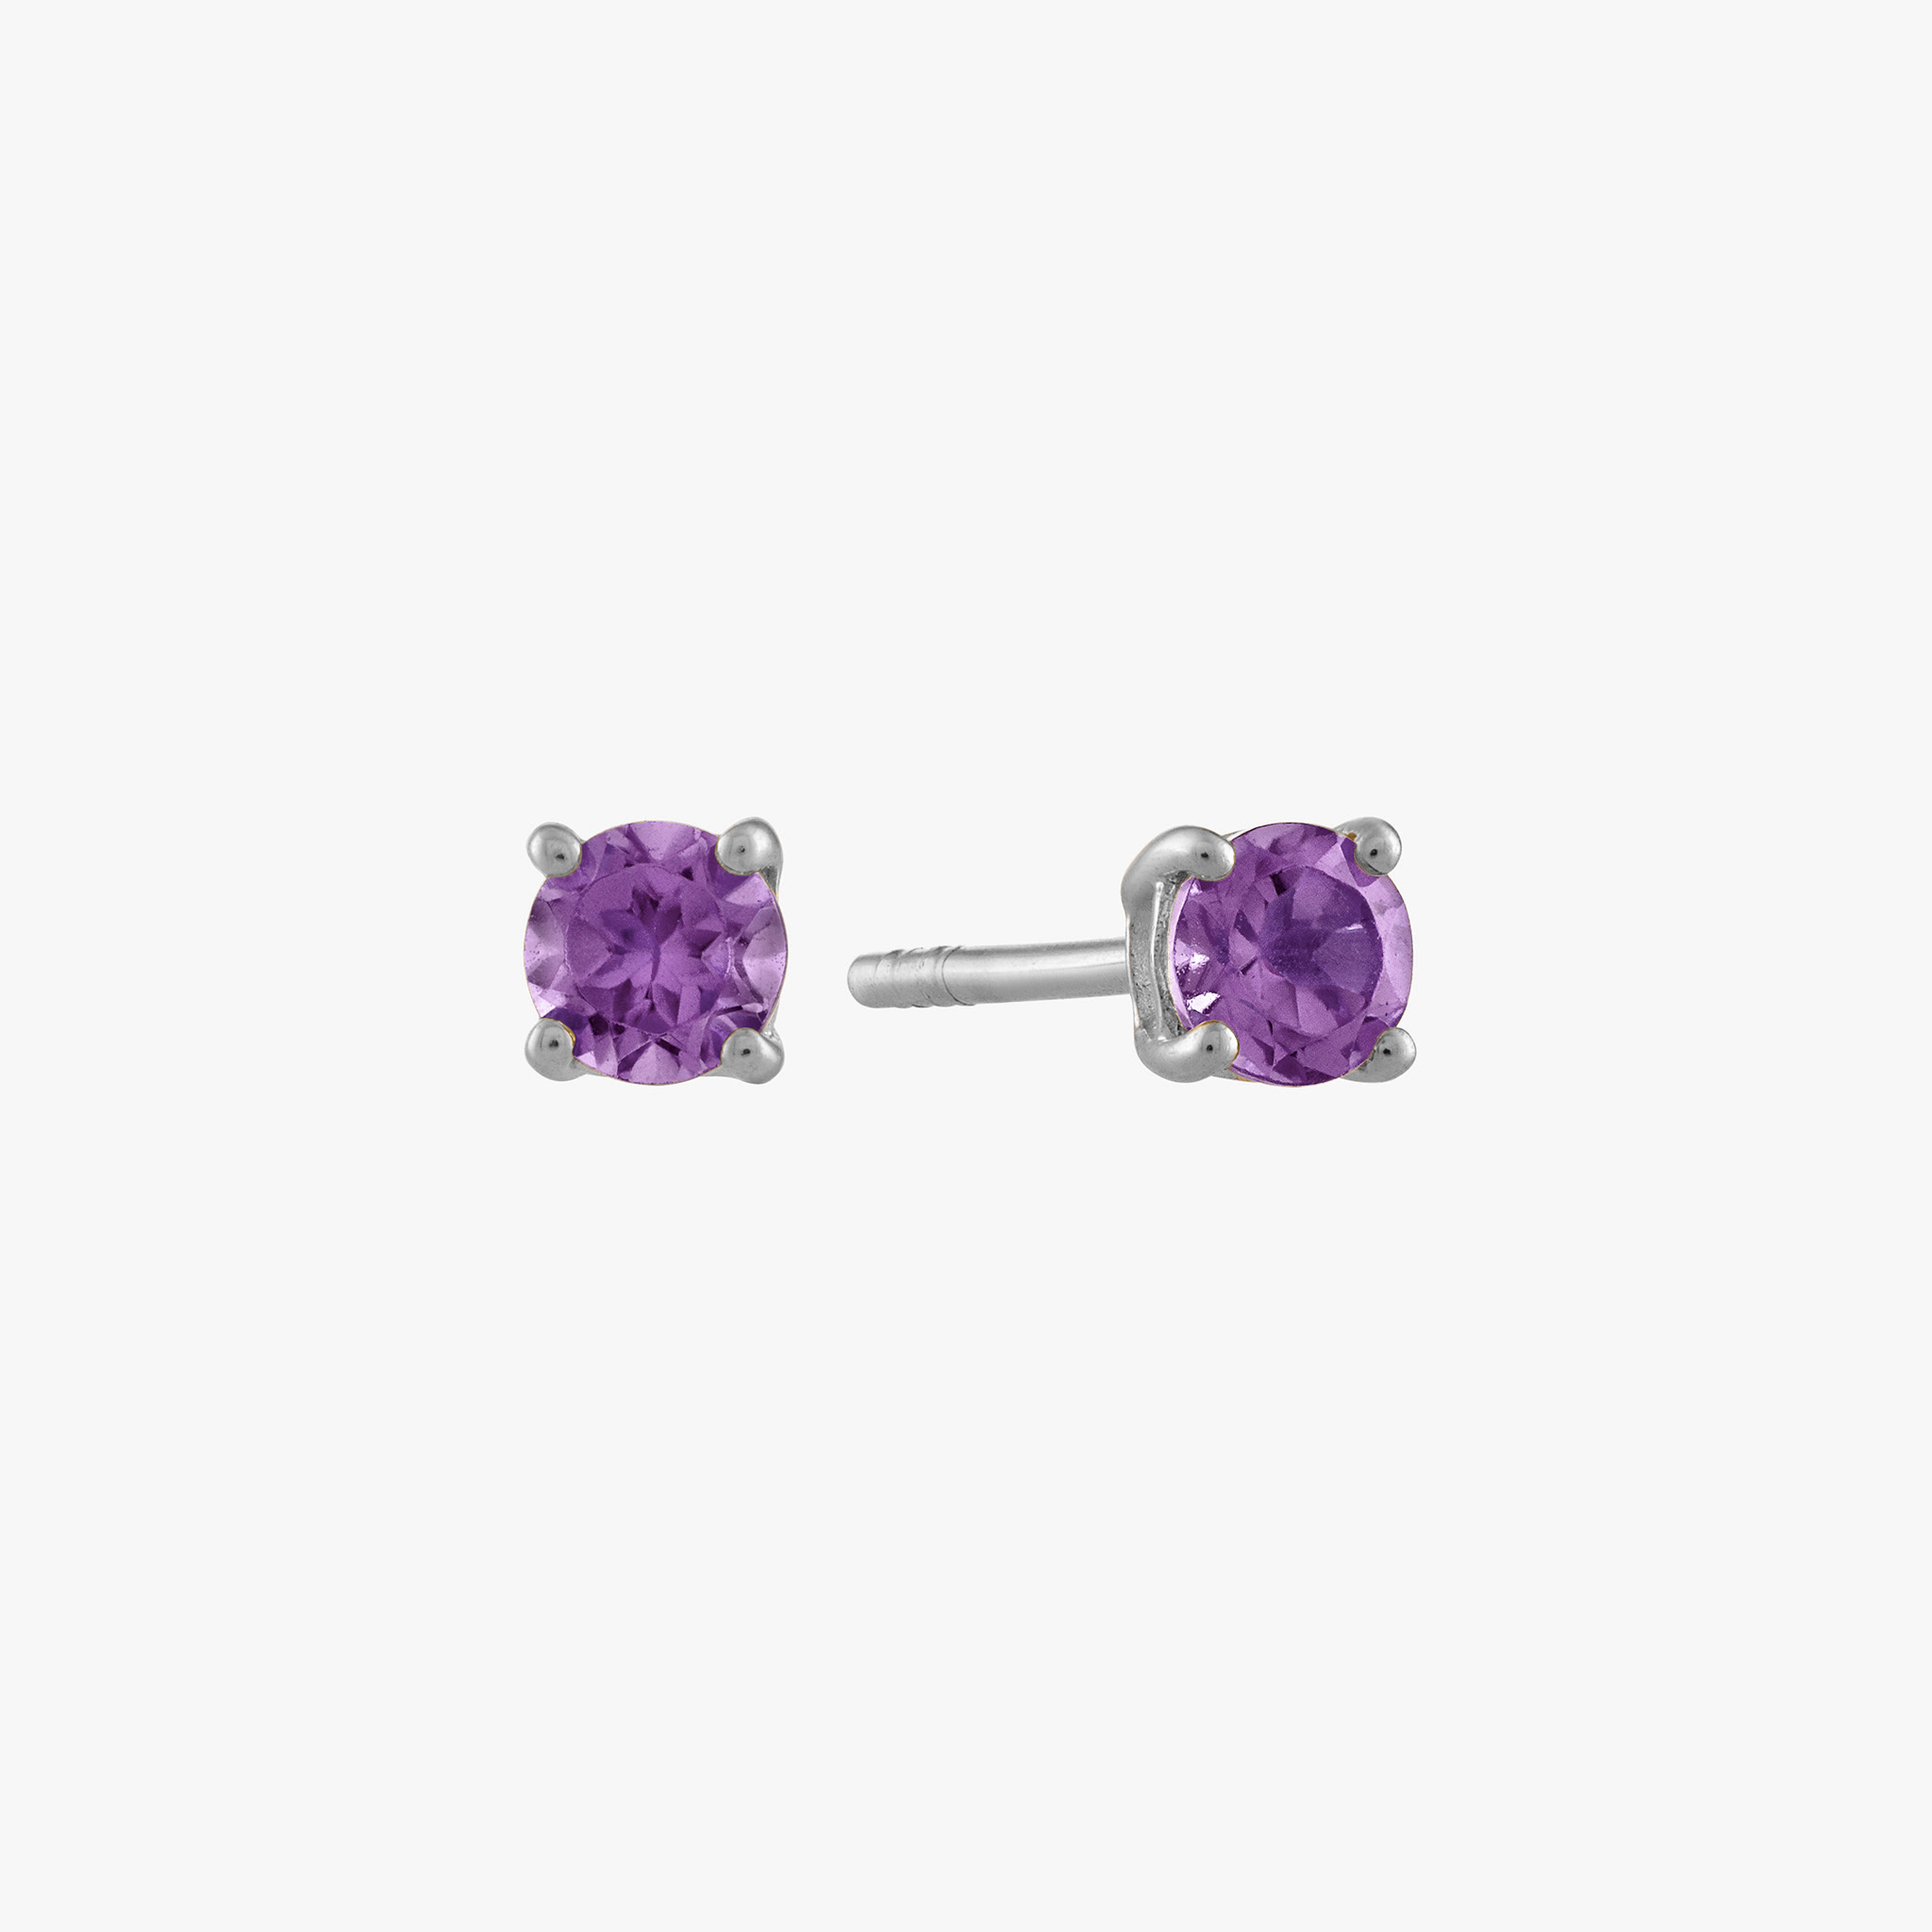 Buy Purple Earrings for Women by Sohi Online | Ajio.com